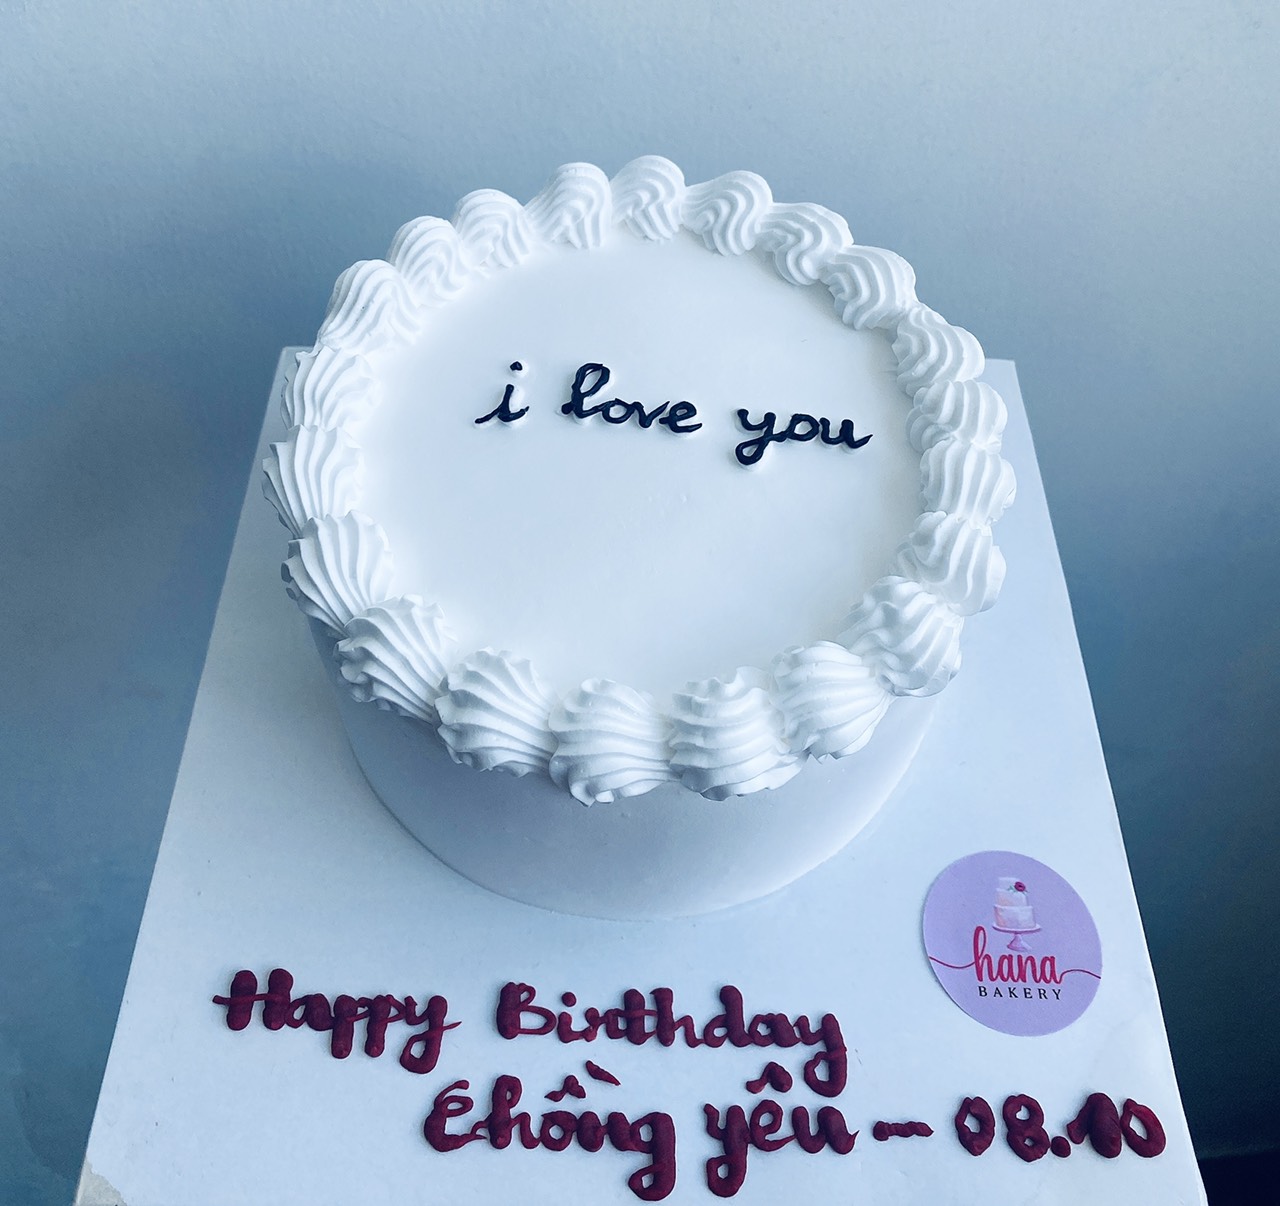 Bánh sinh nhật tạo hình trái tim chúc mừng sinh nhật chồng yêu (Mẫu 52964)  - FRIENDSHIP CAKES & GIFT